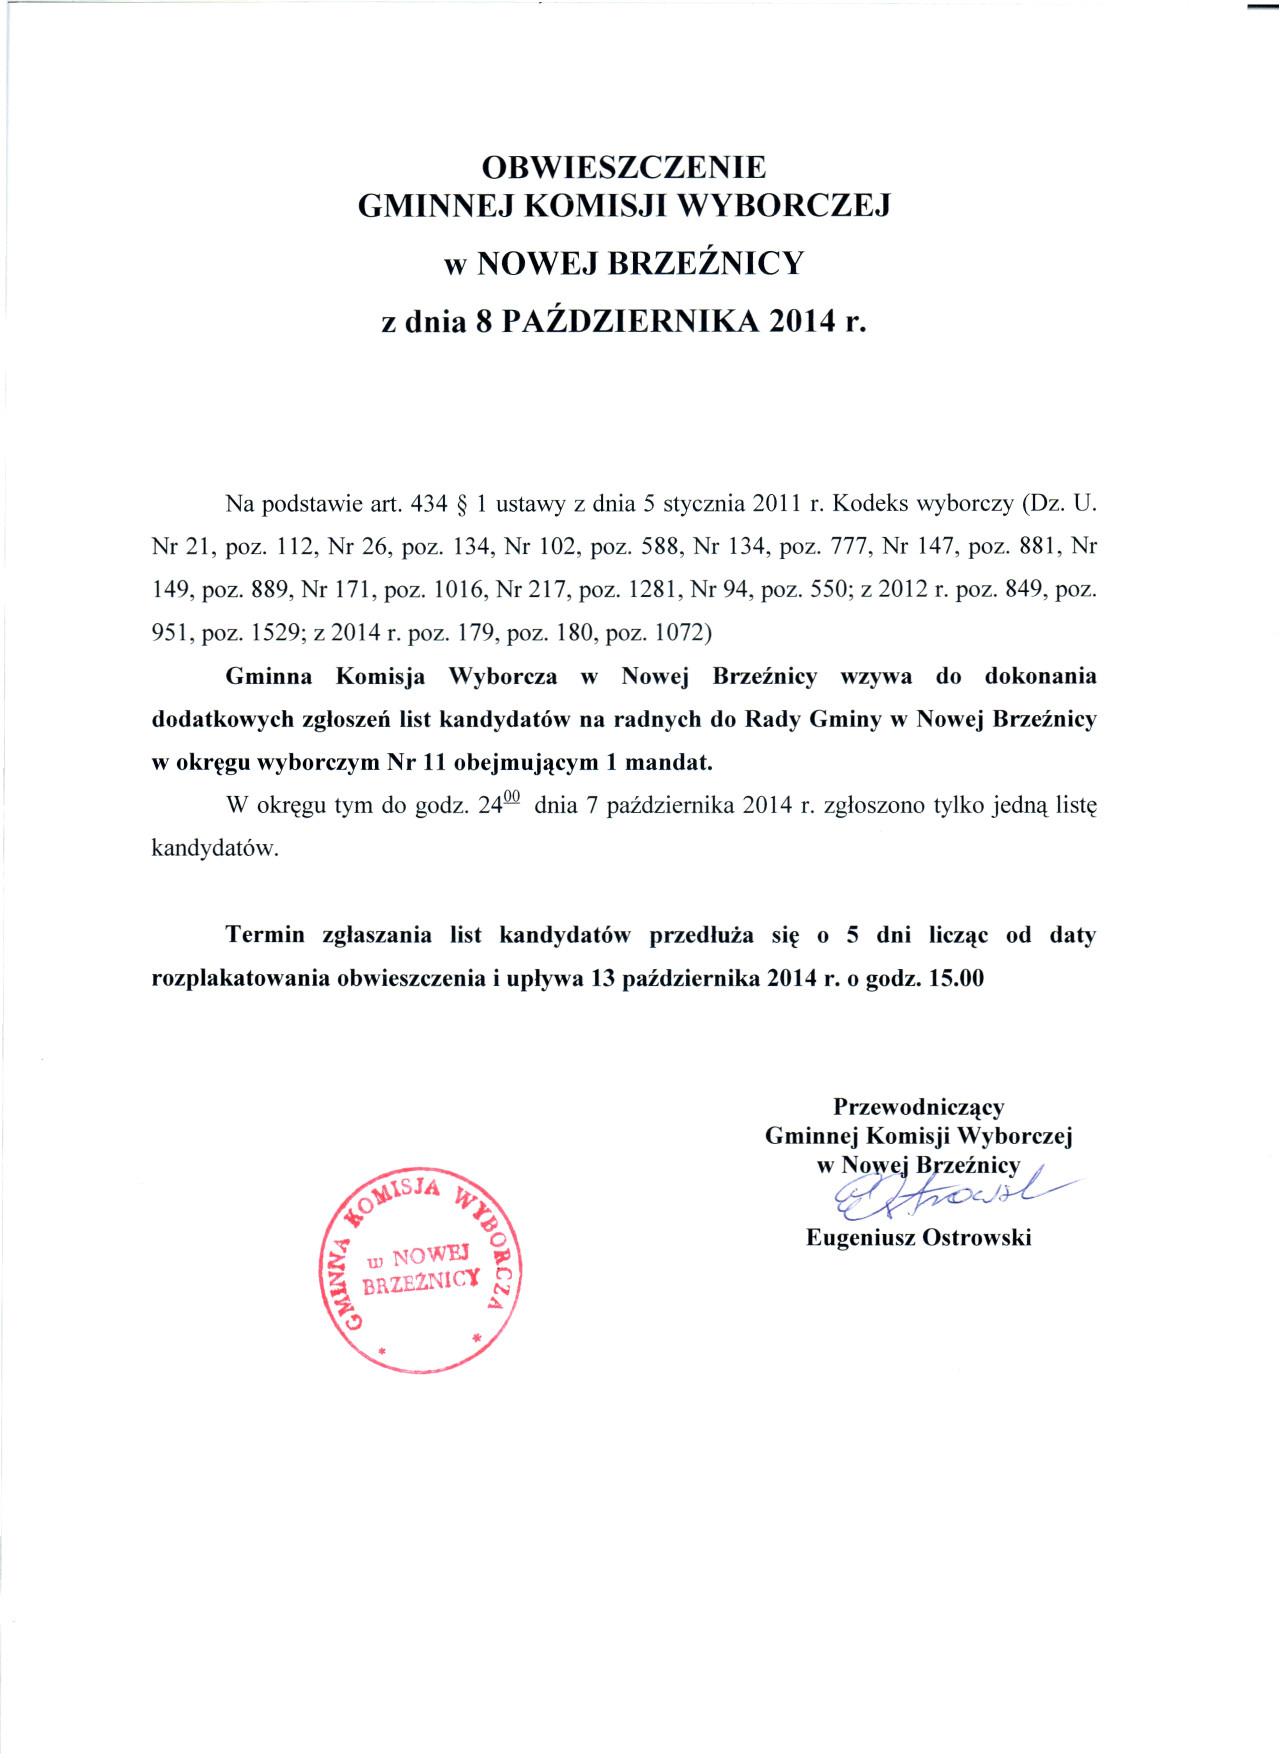          obwieszczenie_gminnej_komisji_08_10_2014-page-001.jpg